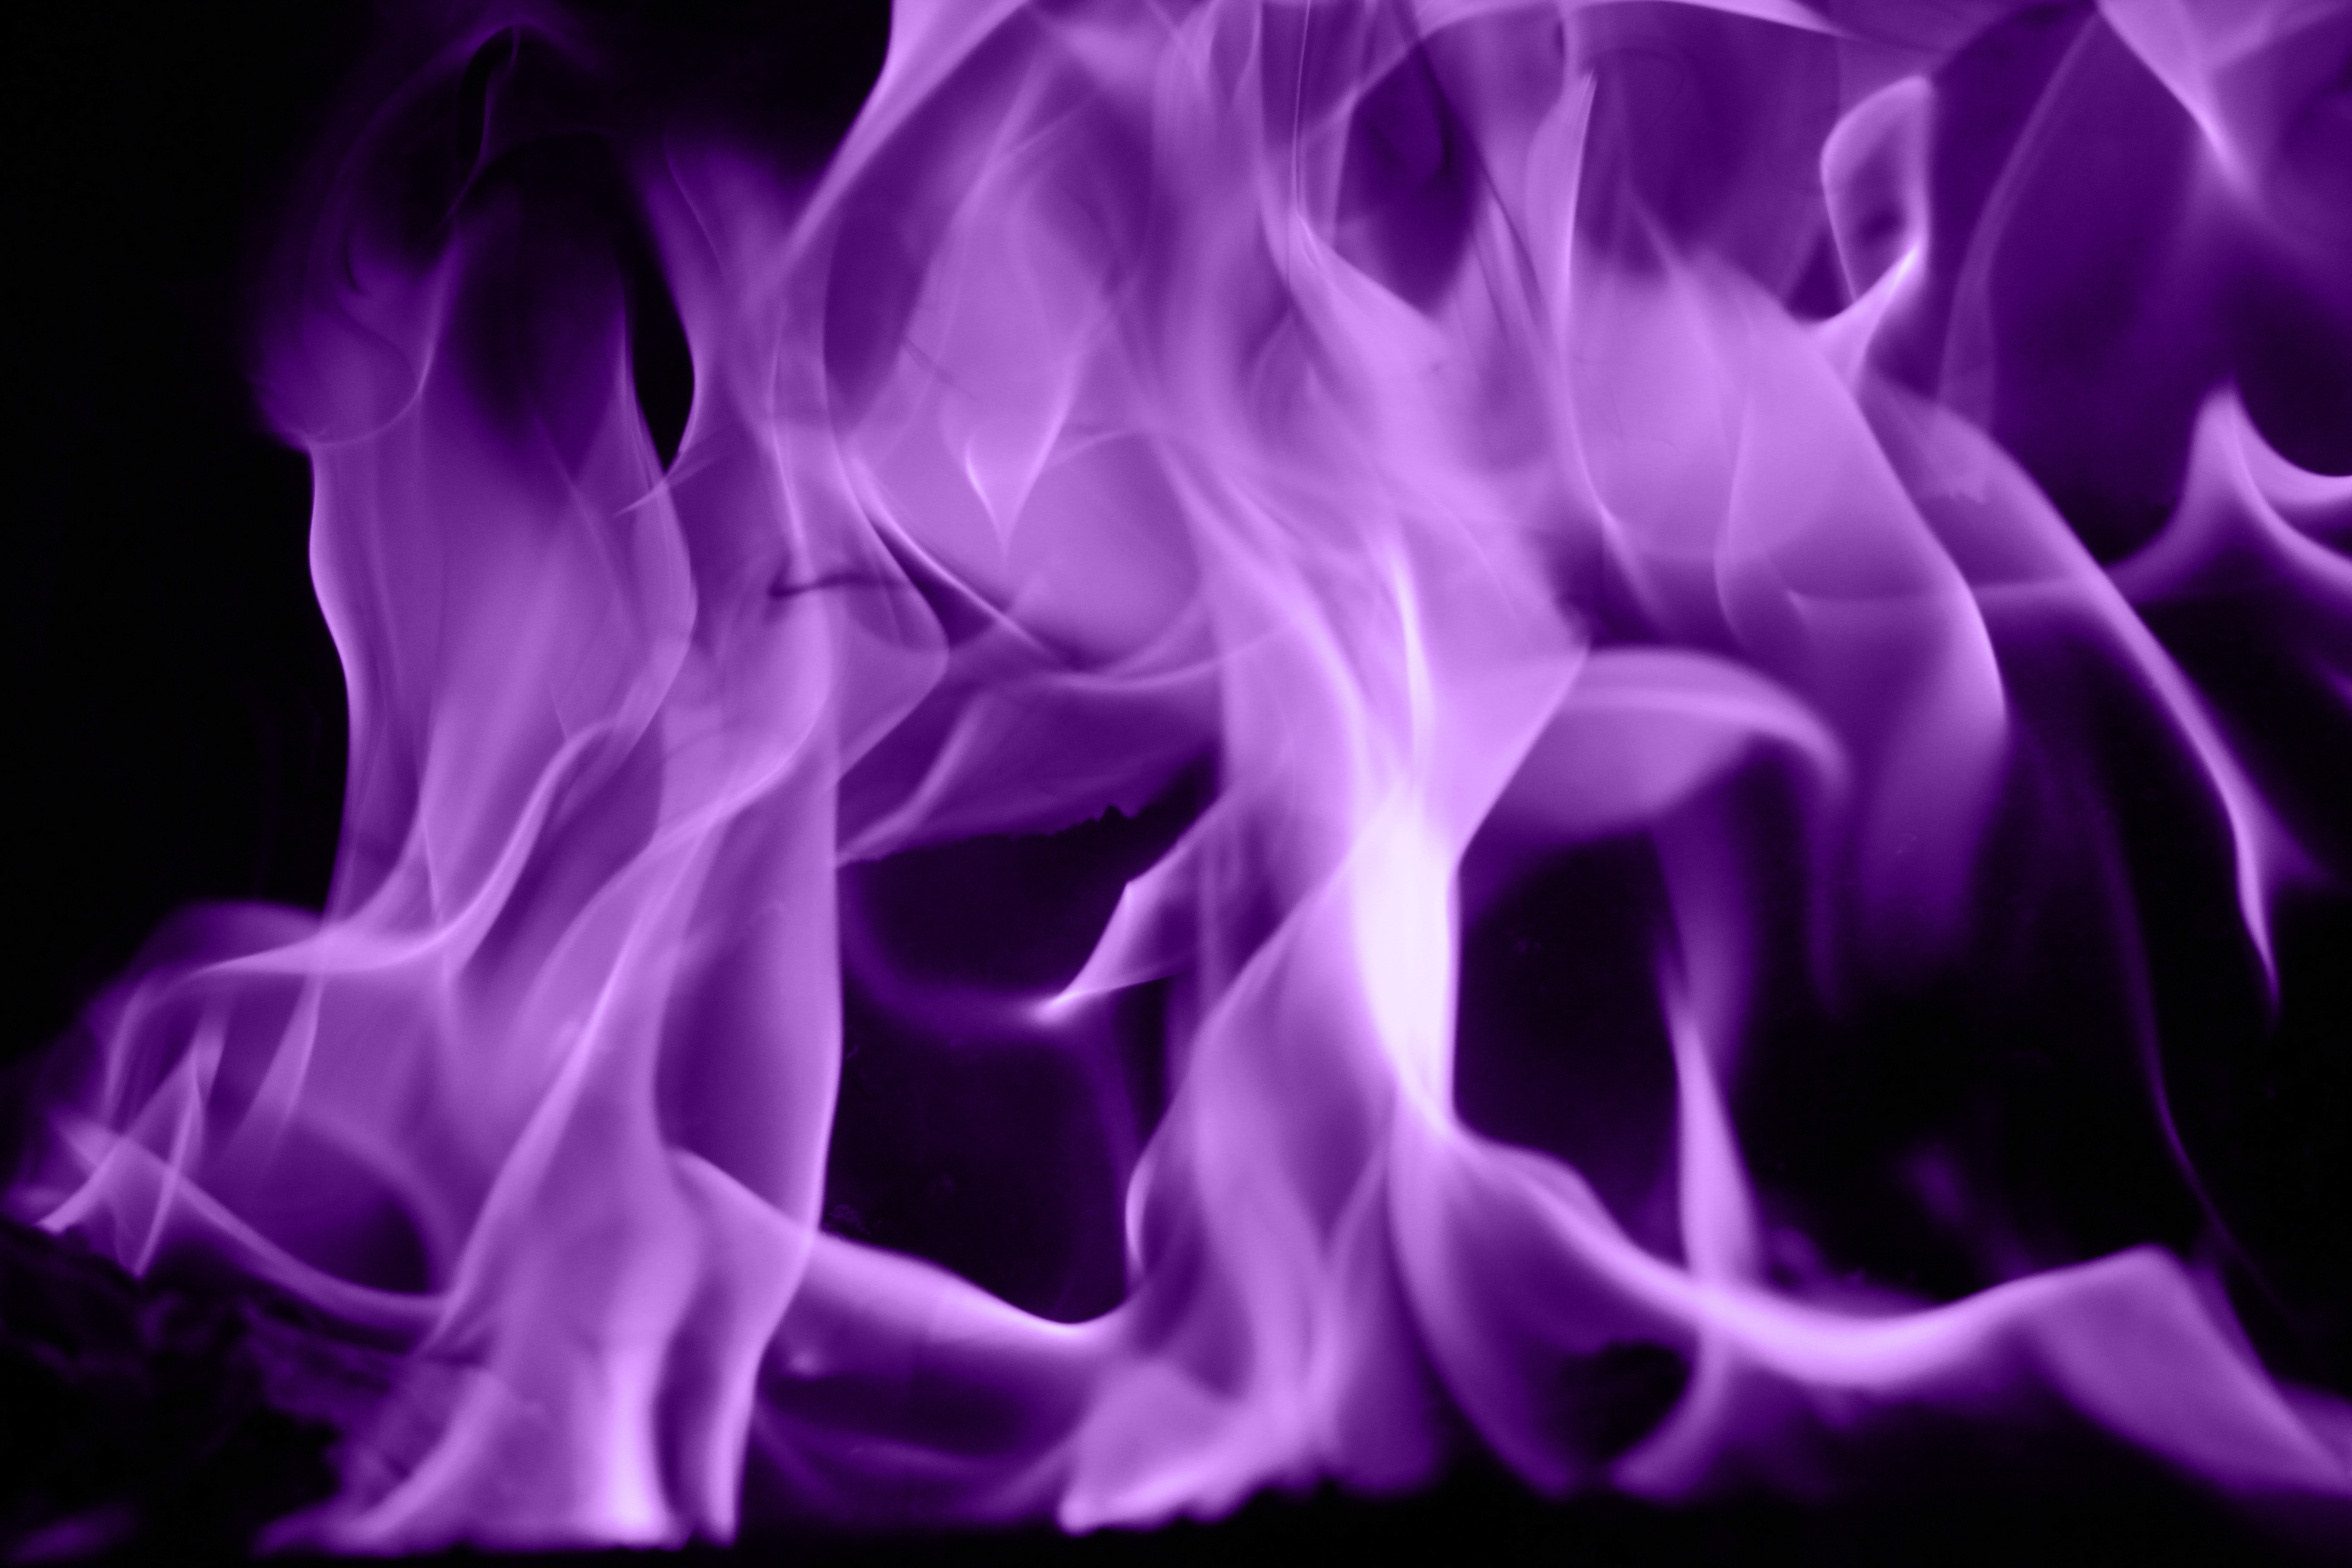 Dark Purple Fire Flames In Black Background HD Dark Purple Wallpapers  HD  Wallpapers  ID 55812